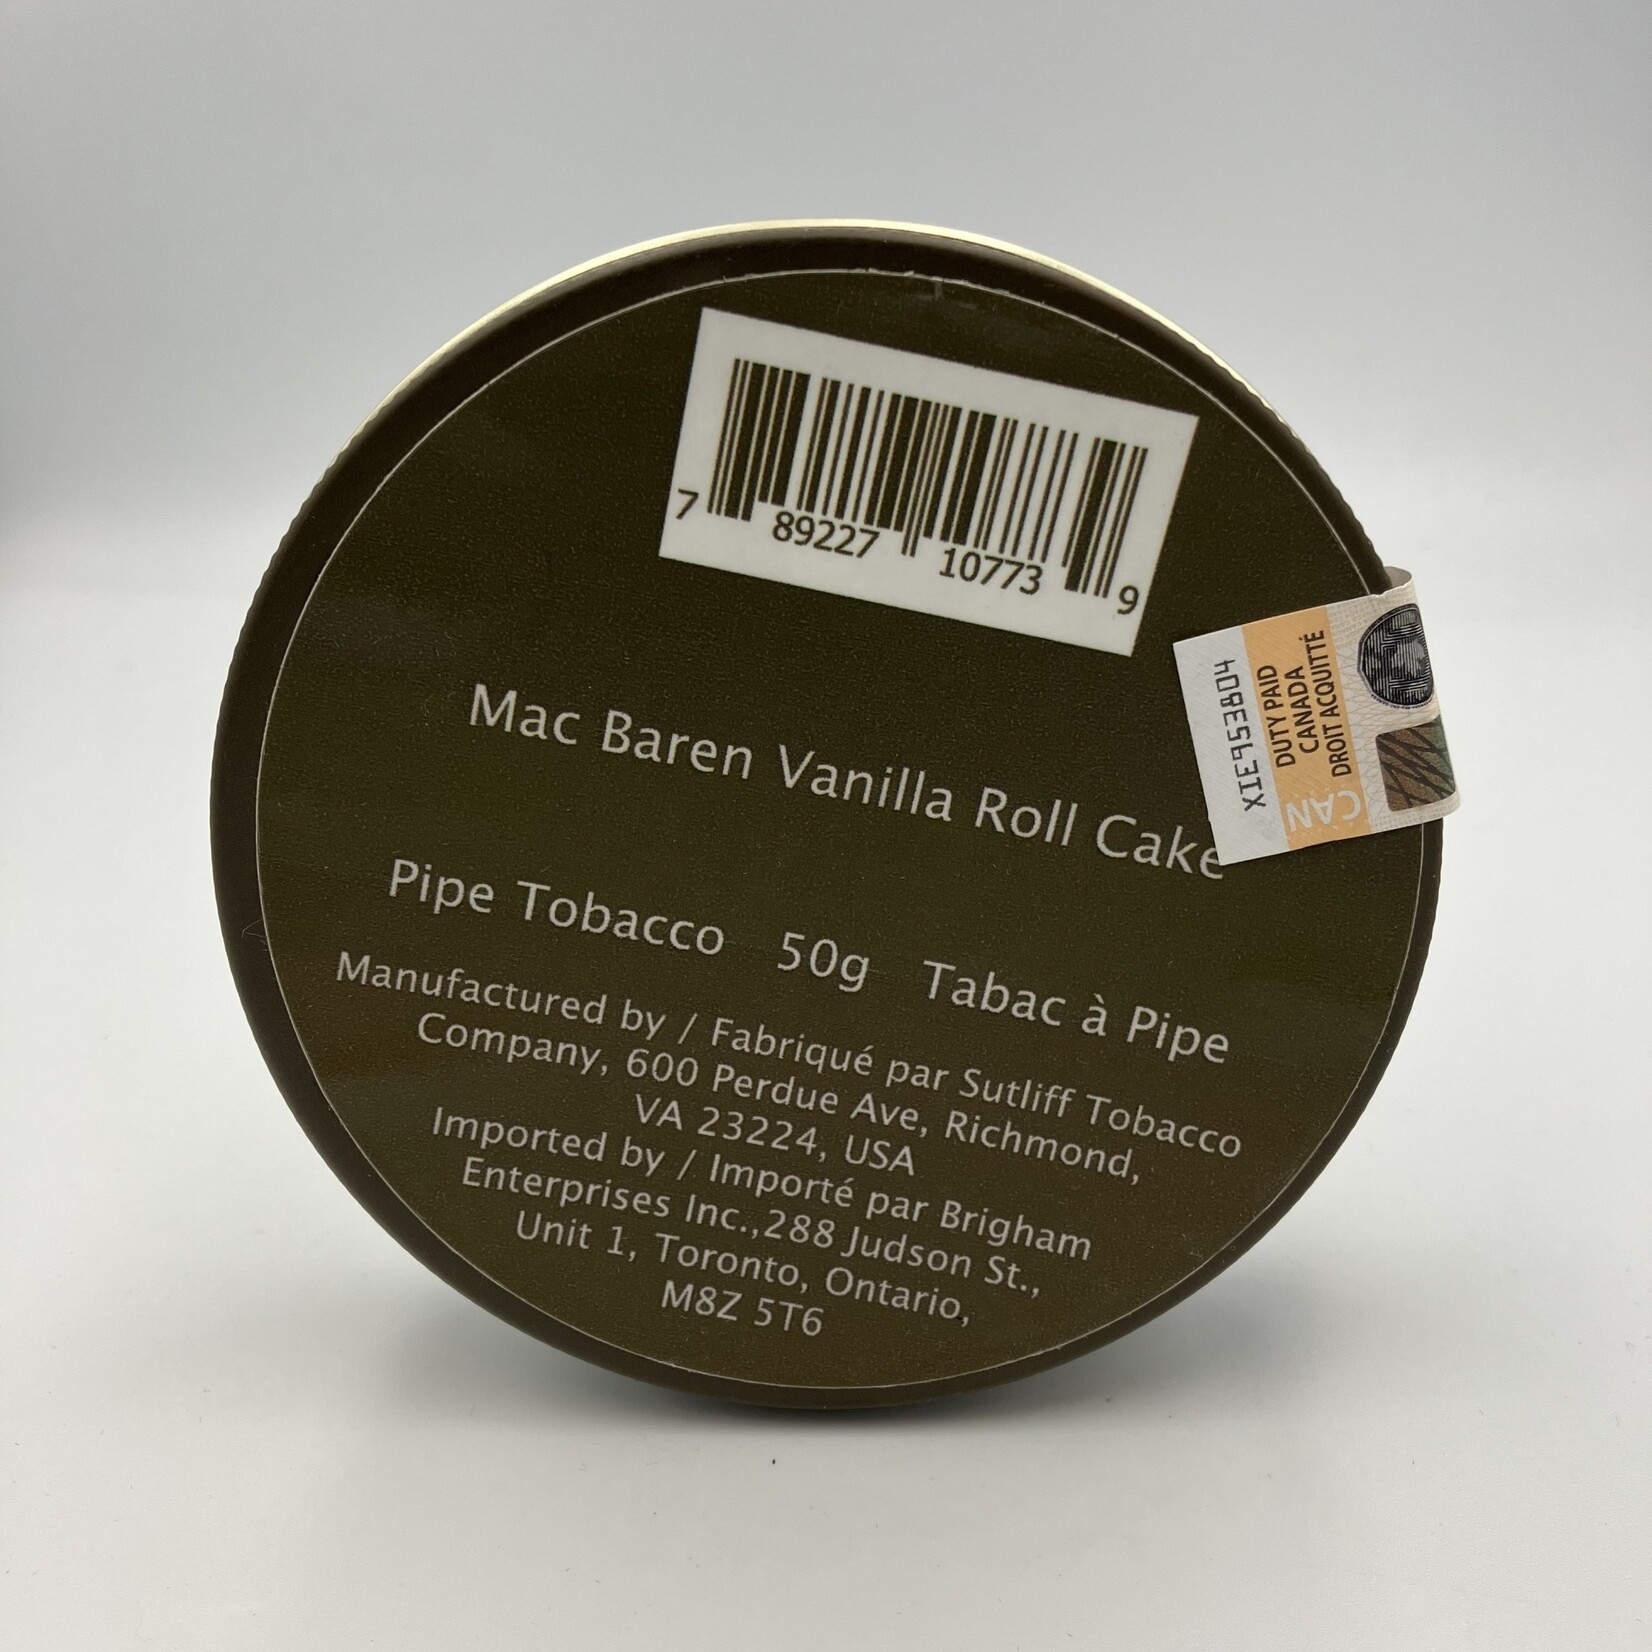 Mac Baren Mac Baren Vanilla Roll Cake